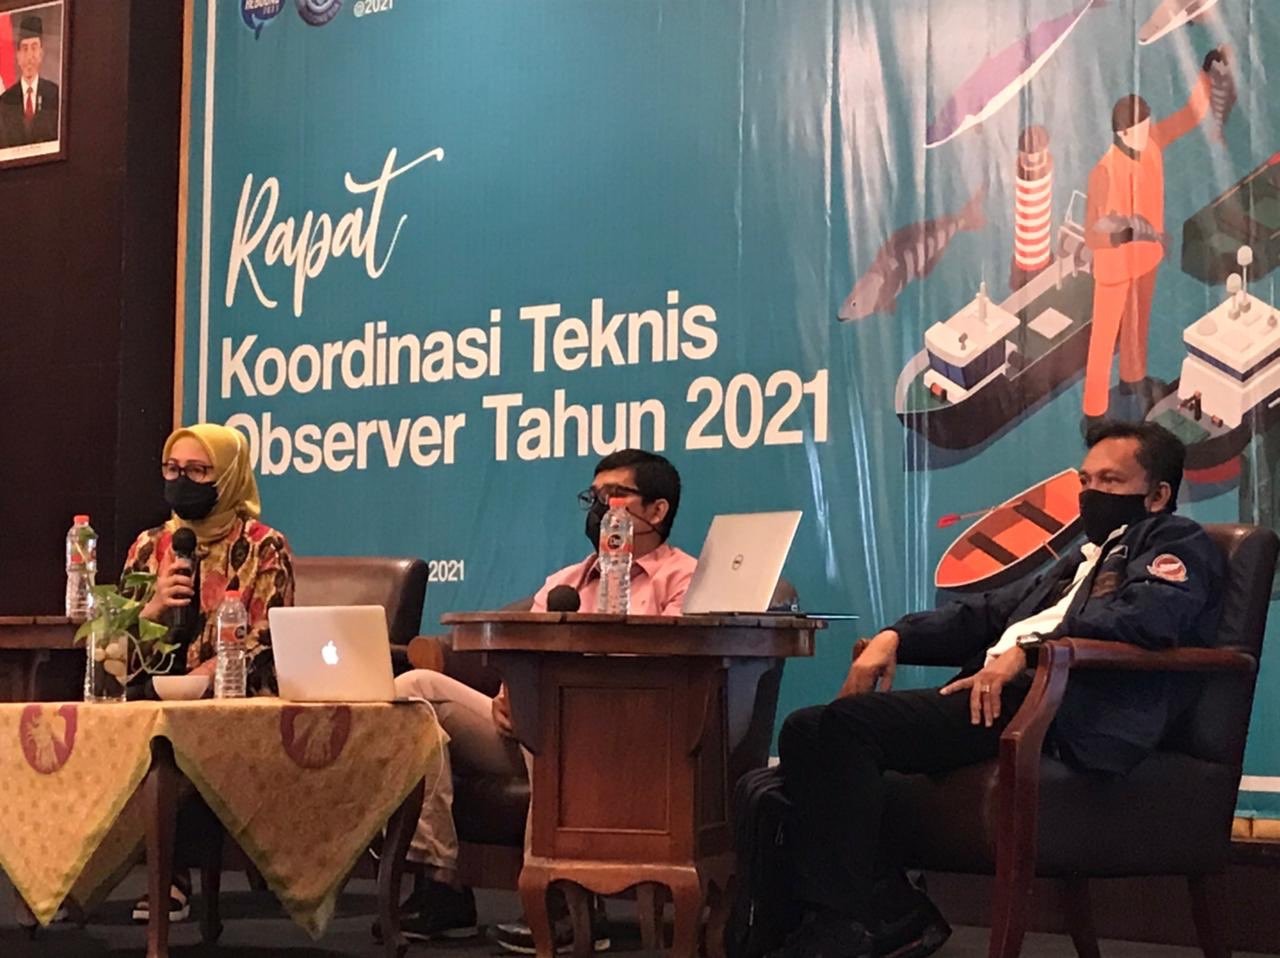 Pertemuan koordinasi teknis observer KKP tahun 2021 secara daring pada 17 Maret 2021. (Foto: humas KKP)